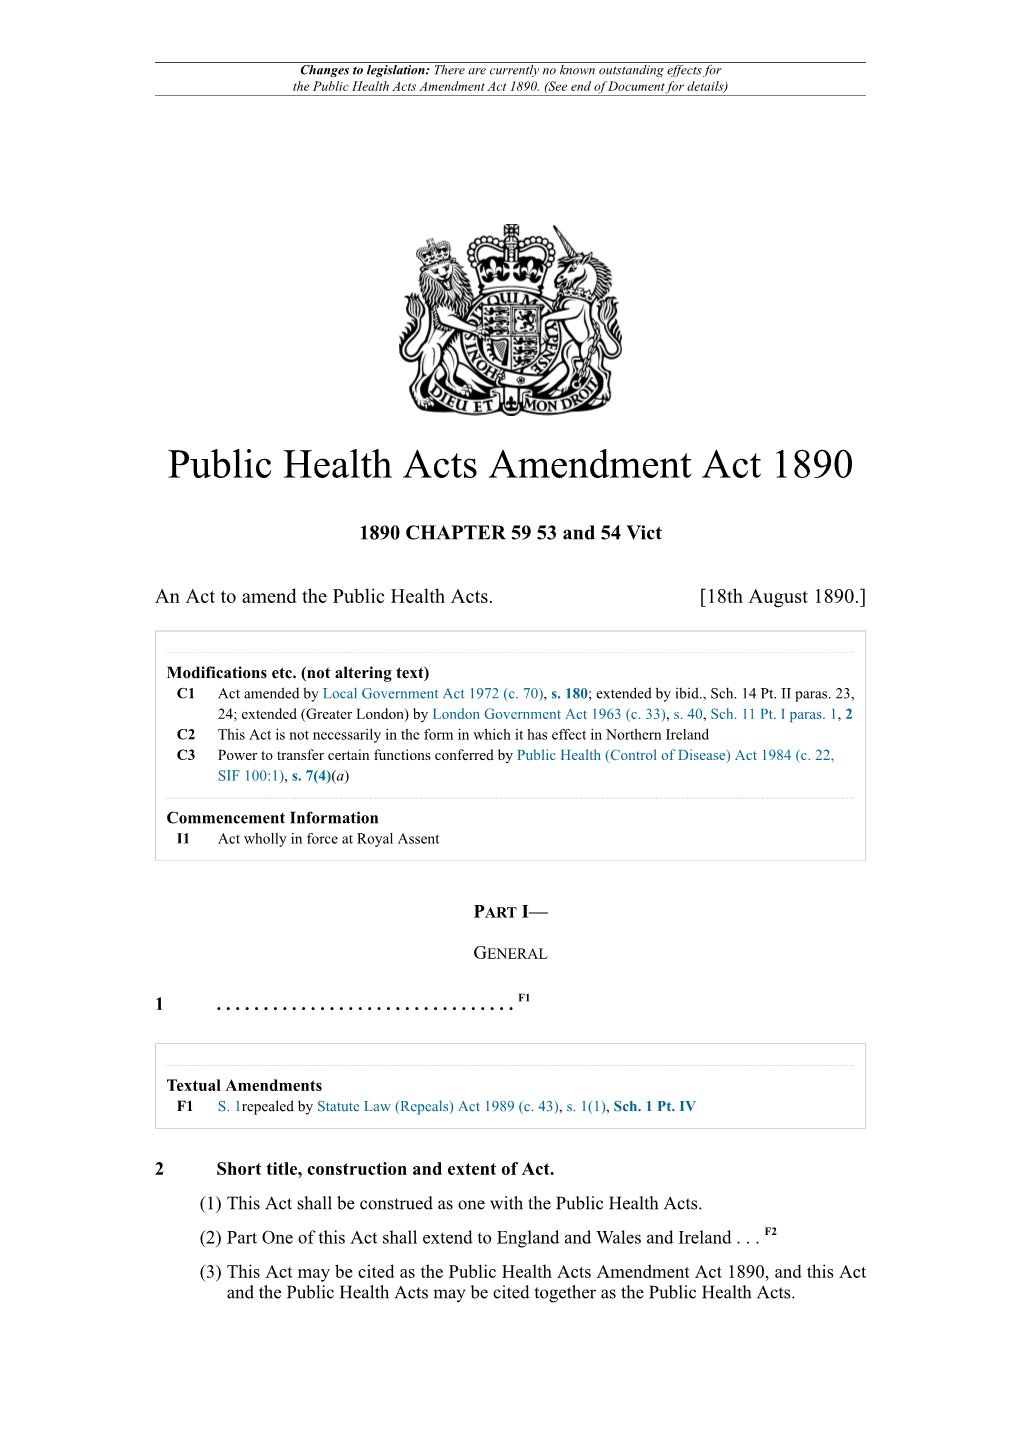 Public Health Acts Amendment Act 1890